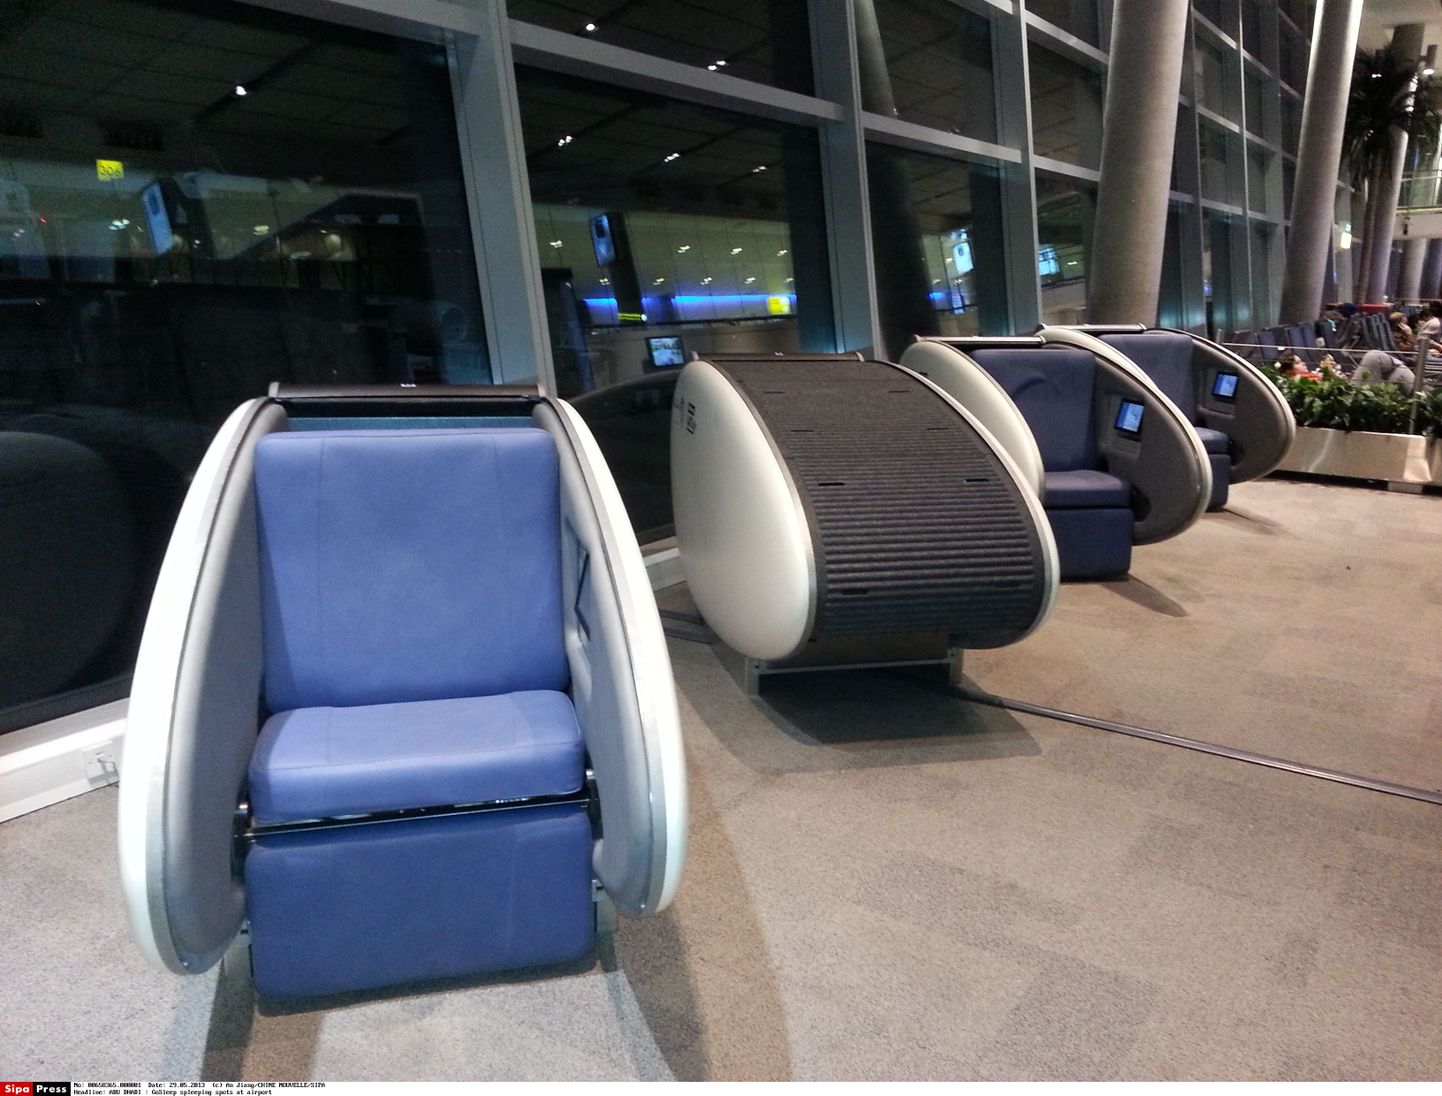 Magamiskabiinid Abu Dhabi lennujaamas. Sarnased magamiskabiinid on ka USA koolides.